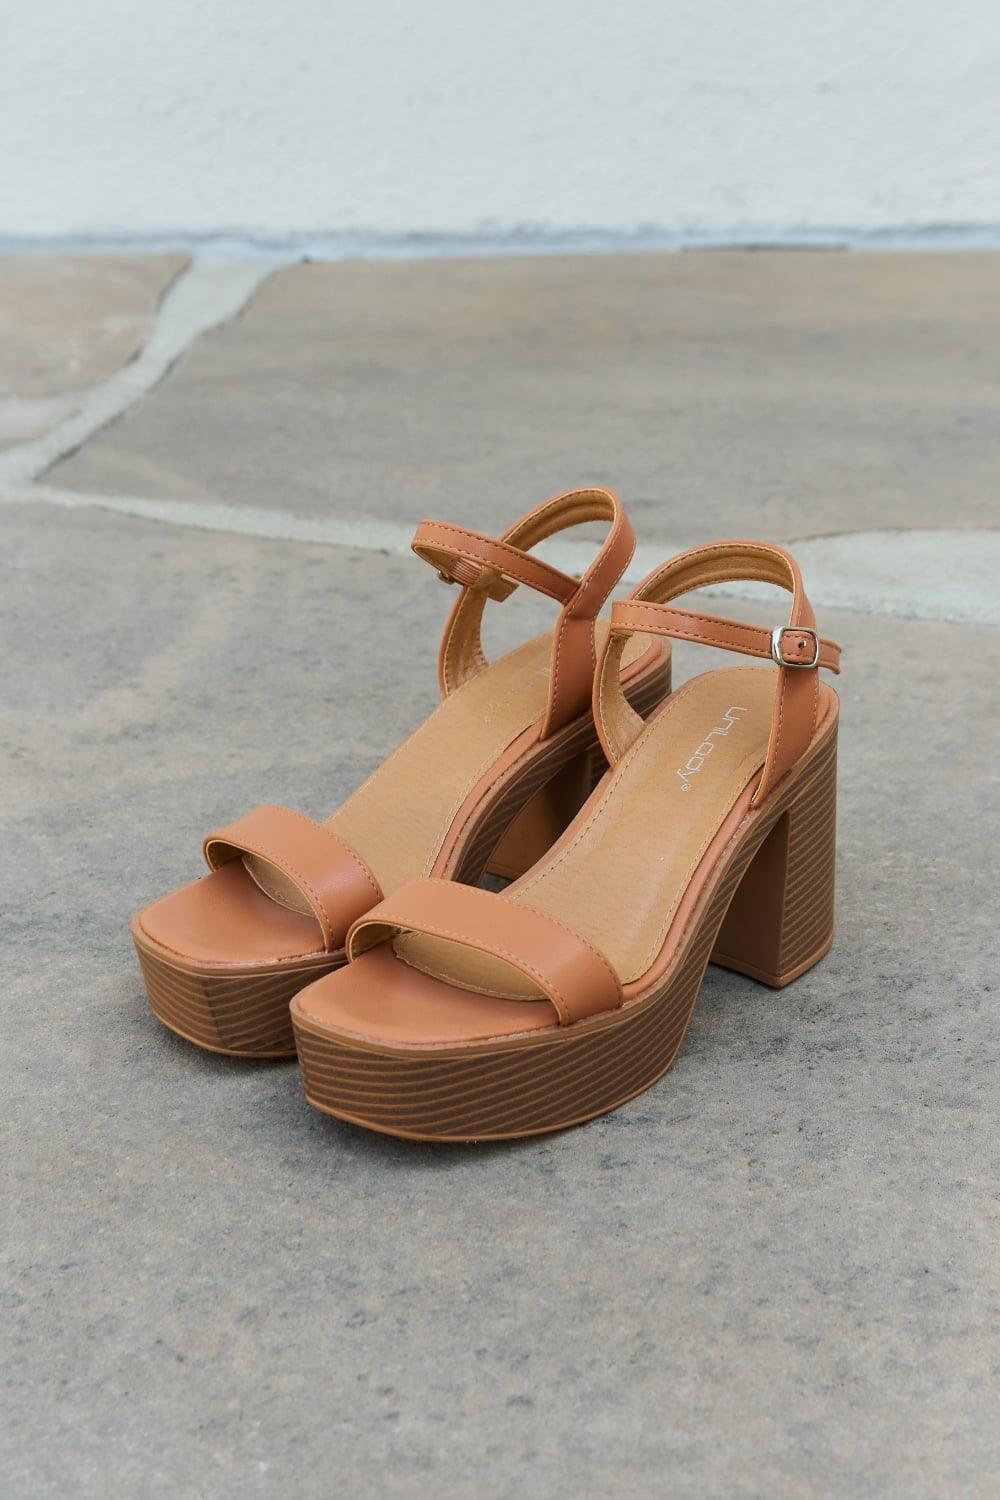 Women's Shoes - Sandals Cognac Platform Heel Sandals